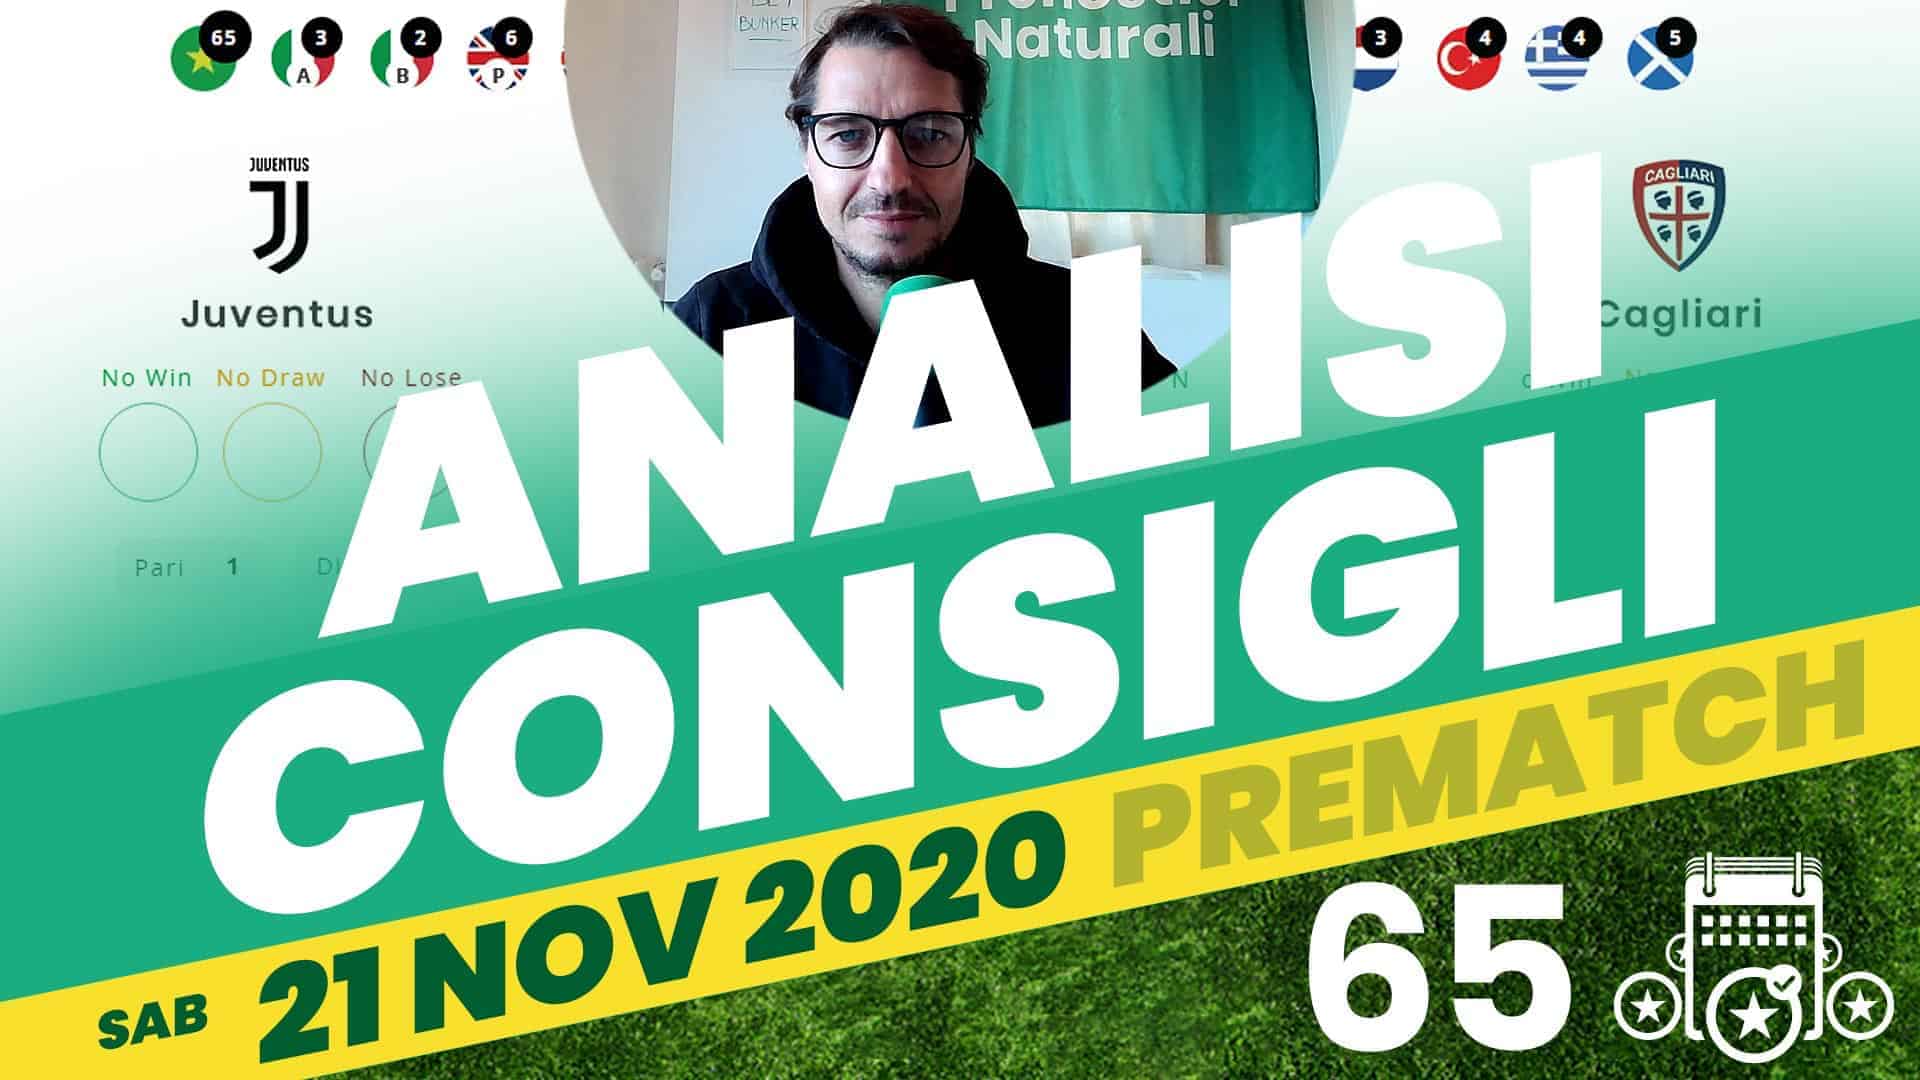 Pronostici Naturali Video Analisi Scommesse Betting Calcio Pre Partite Sabato 21 Nov 2020